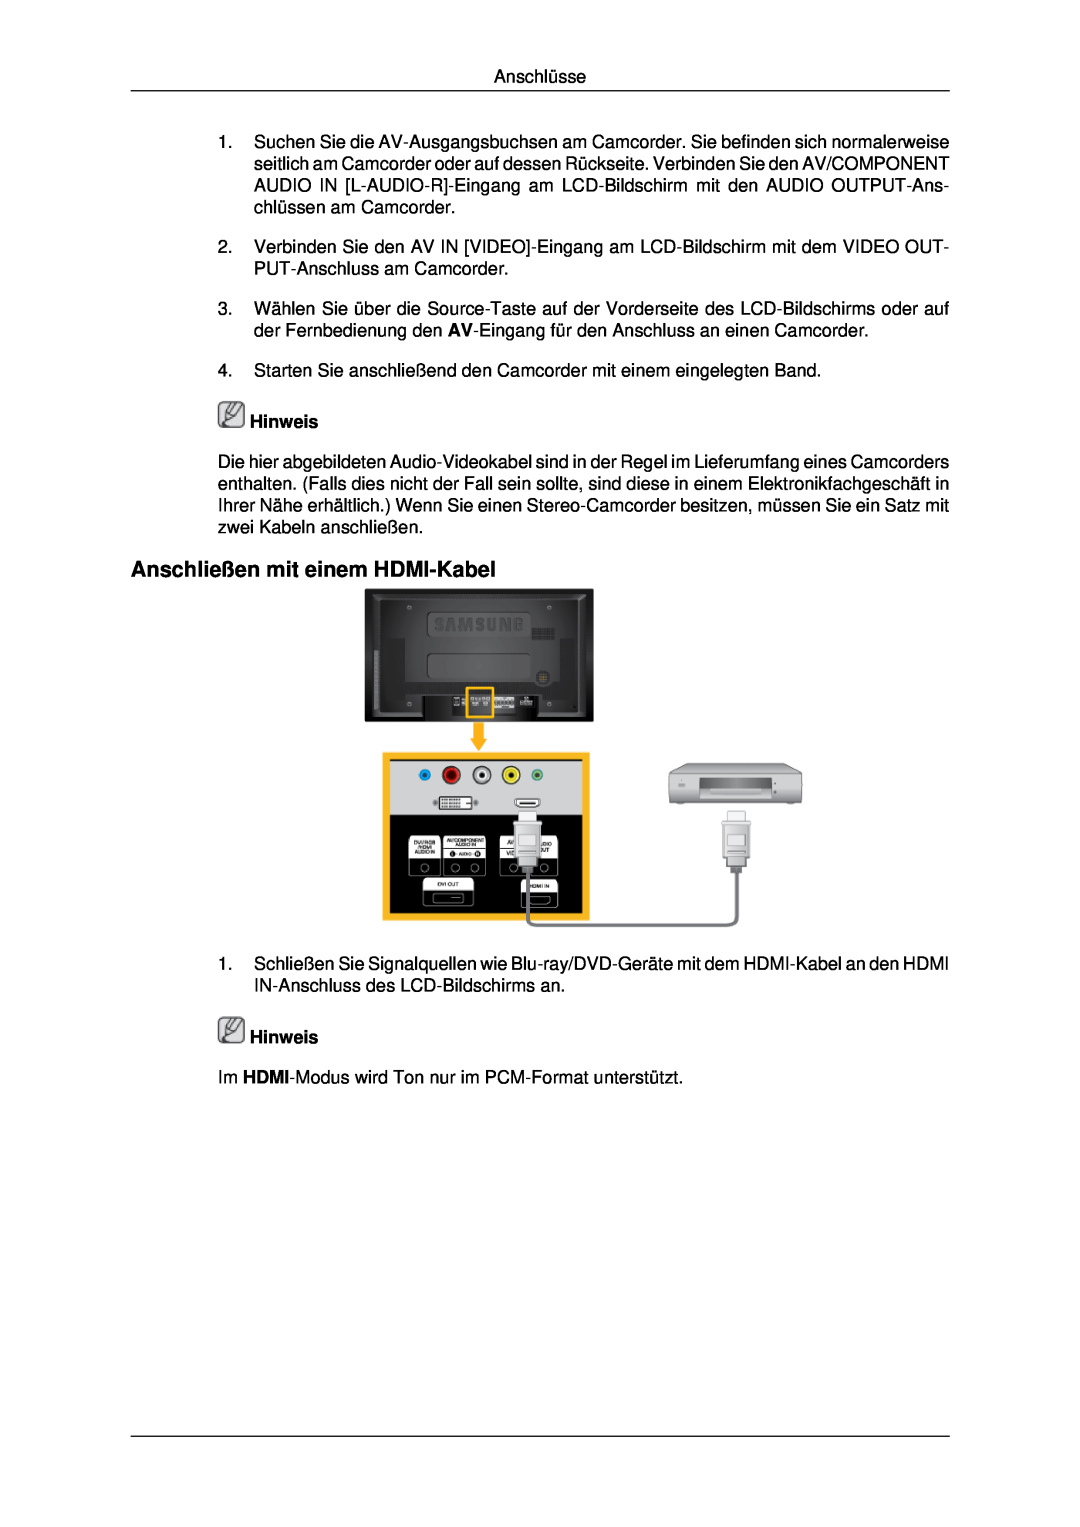 Samsung LH40MRPLBF/EN, LH46MSTABB/EN, LH46MRPLBF/EN, LH40MRTLBC/EN, LH46MRTLBC/EN Anschließen mit einem HDMI-Kabel, Hinweis 